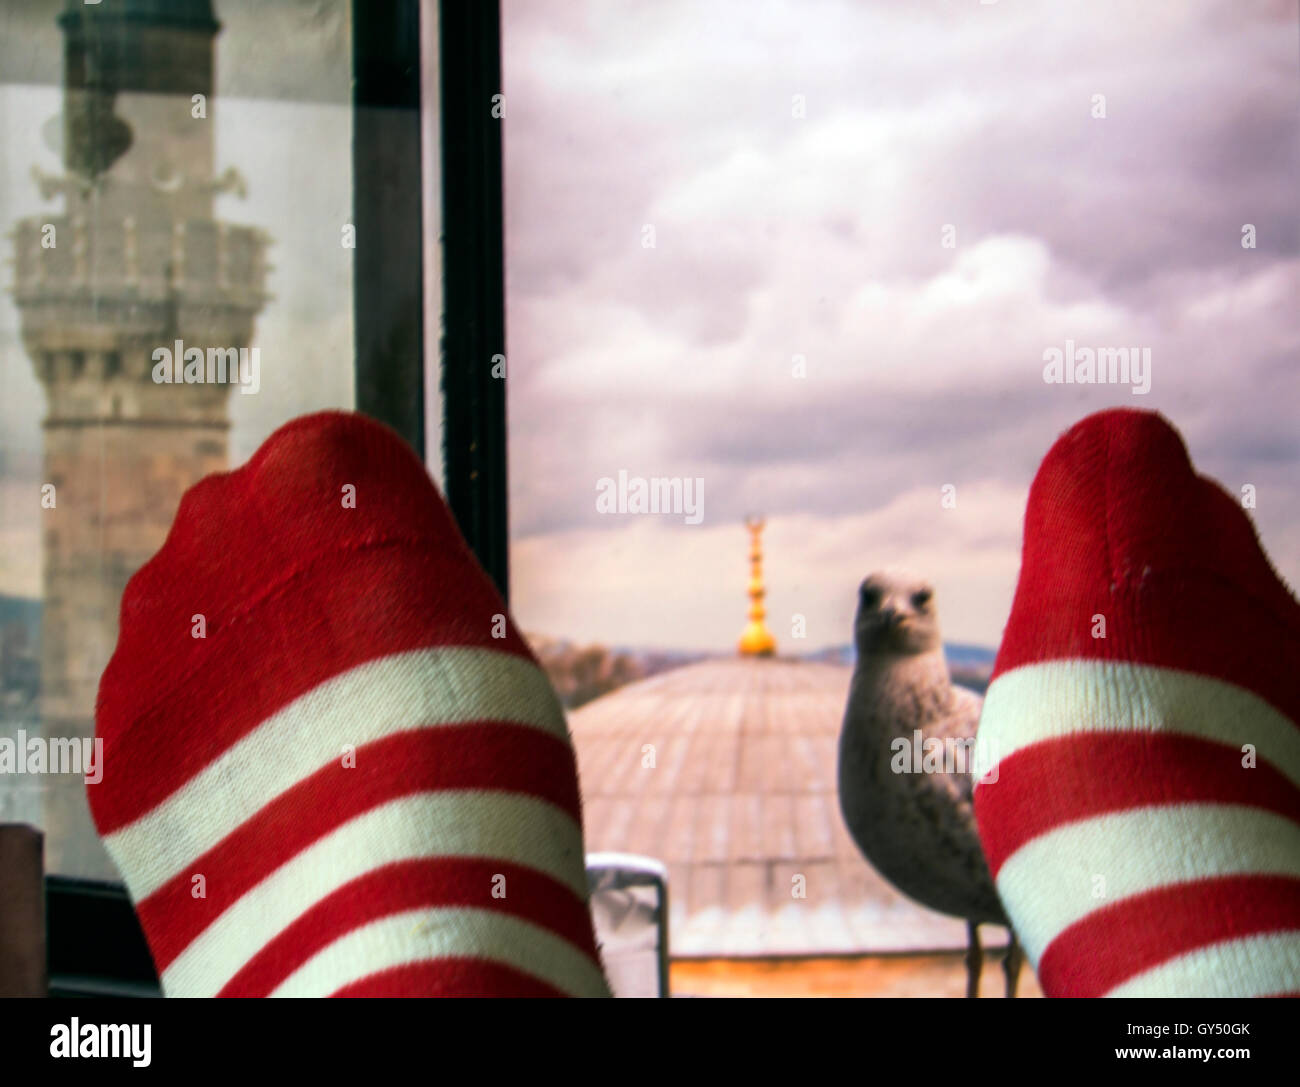 Gli uomini i piedi nelle calze a strisce su uno sfondo di una finestra che si affaccia sulla moschea e il Gabbiano seduta su un davanzale Foto Stock